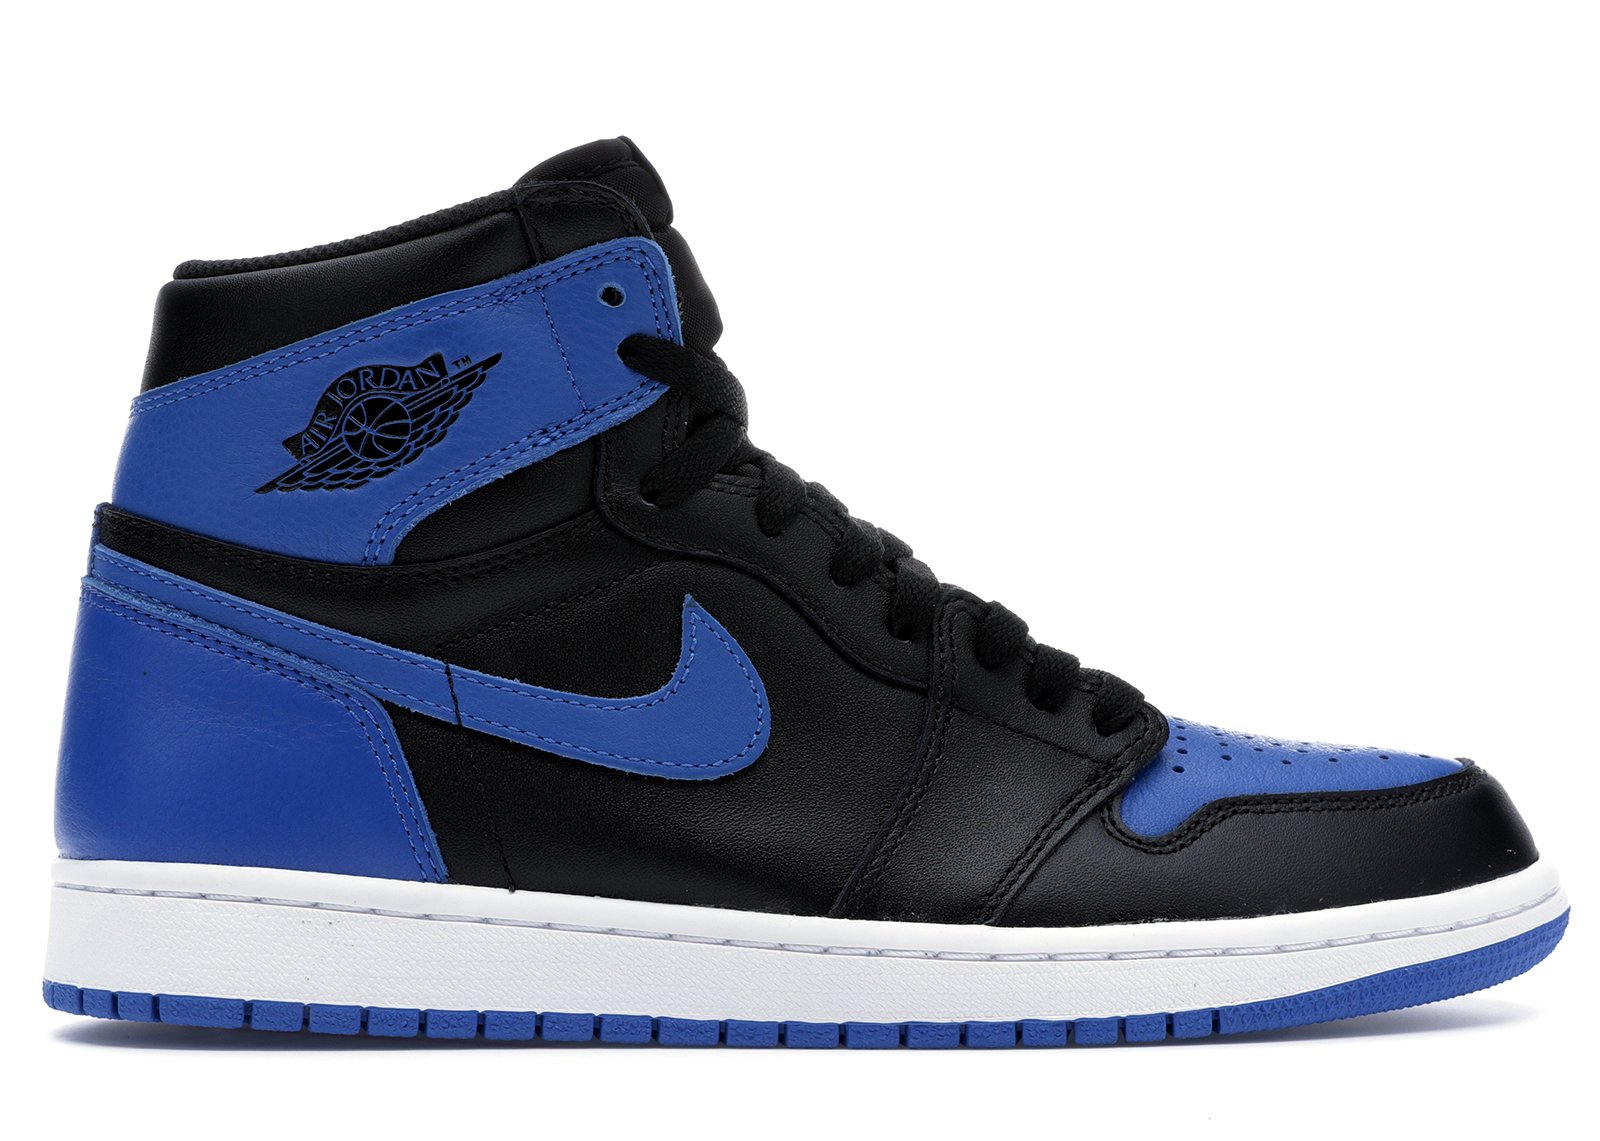 Jordan 1 Retro Black Royal Blue (2013) sneakers